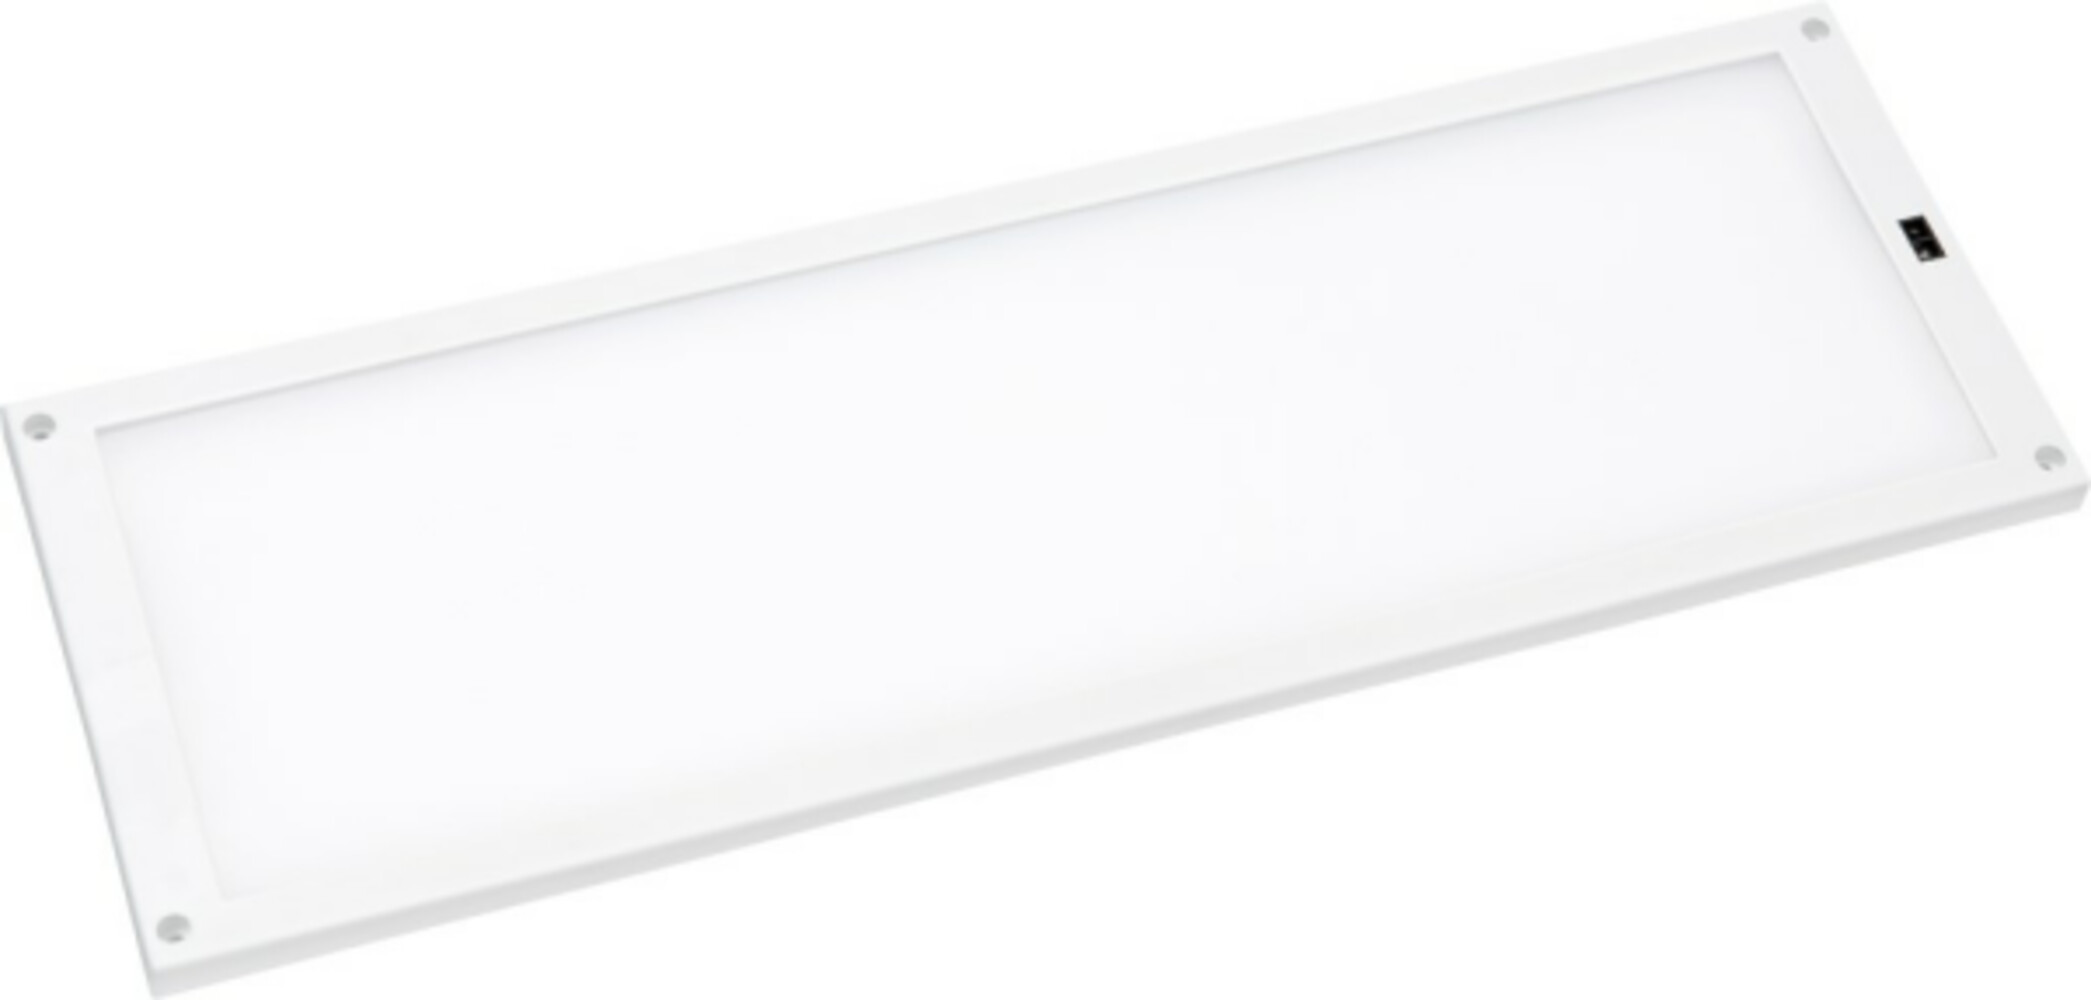 Bild zeigt ein hochwertiges LED Panel von Star Trading im Format 10 x 30 cm mit einer Helligkeit von 270 LM